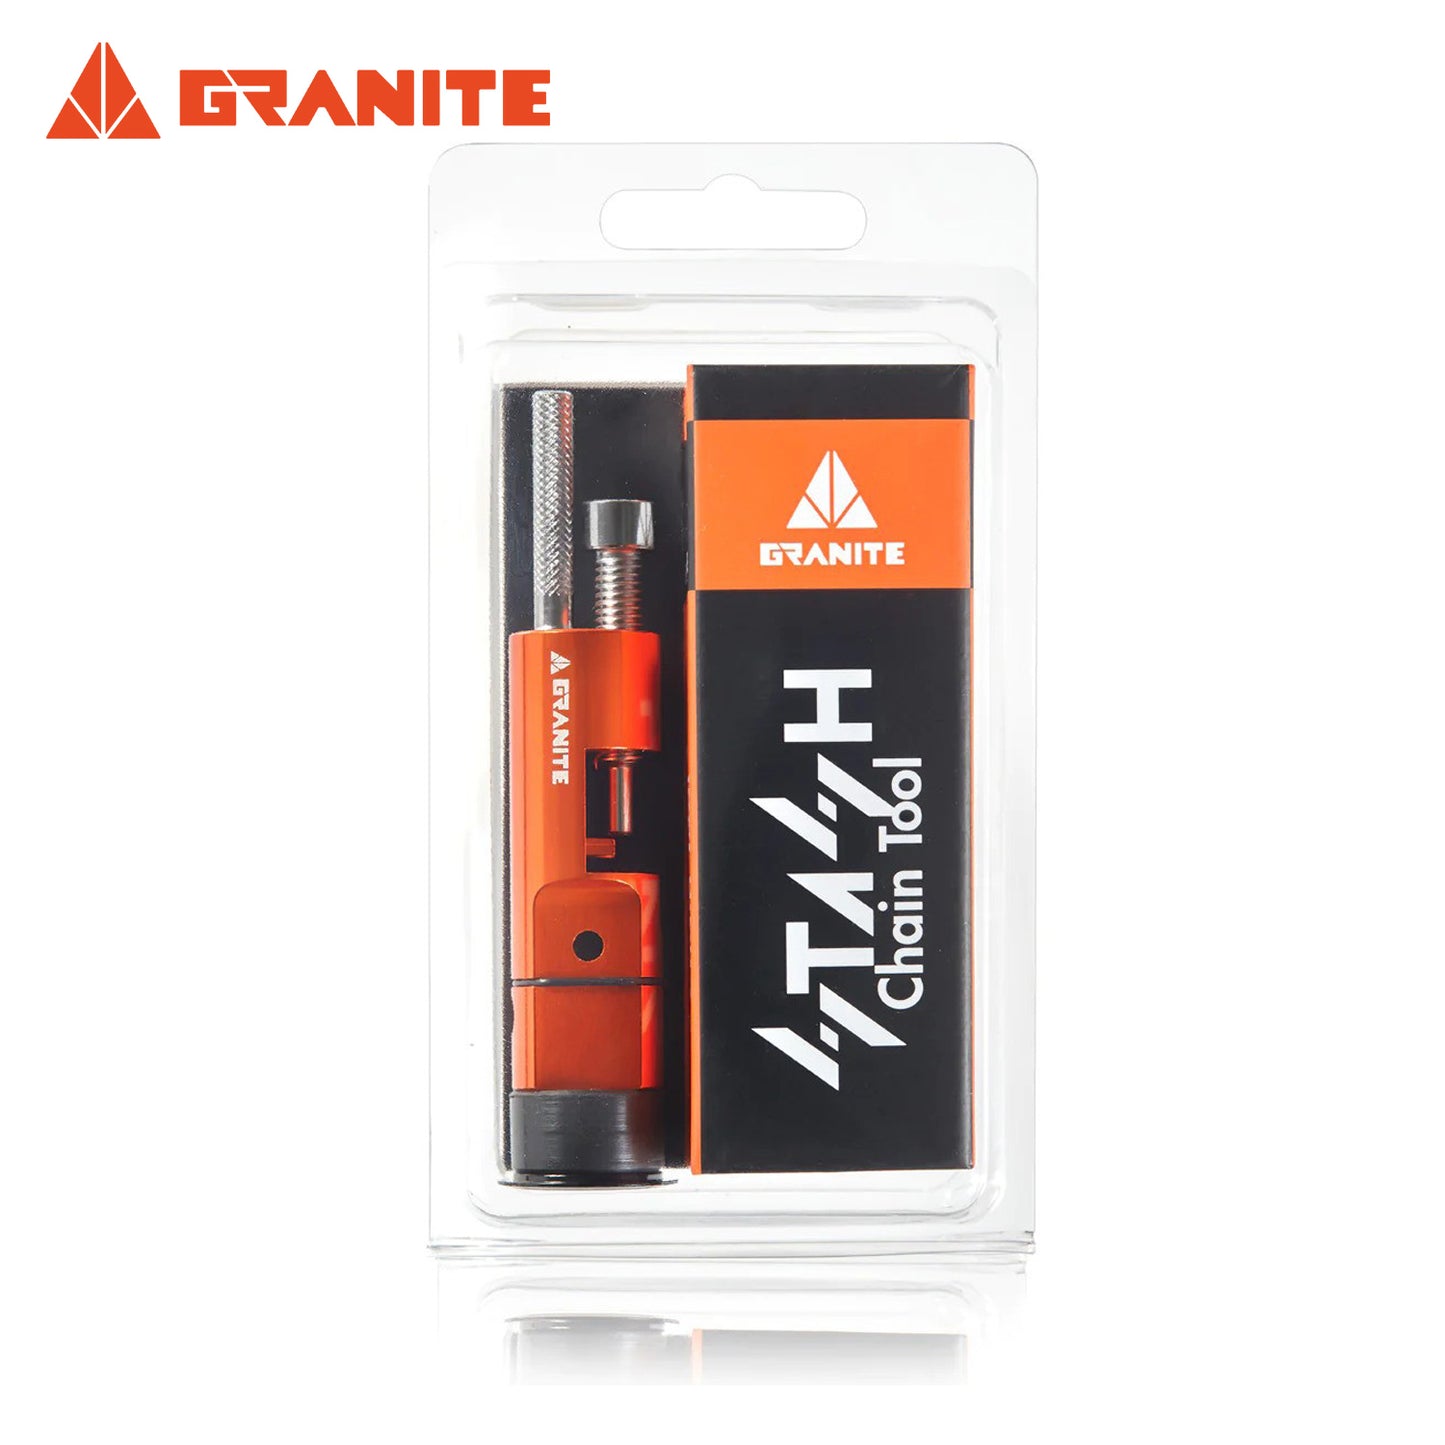 Granite Stash Chain Repair Tool Kit - Orange